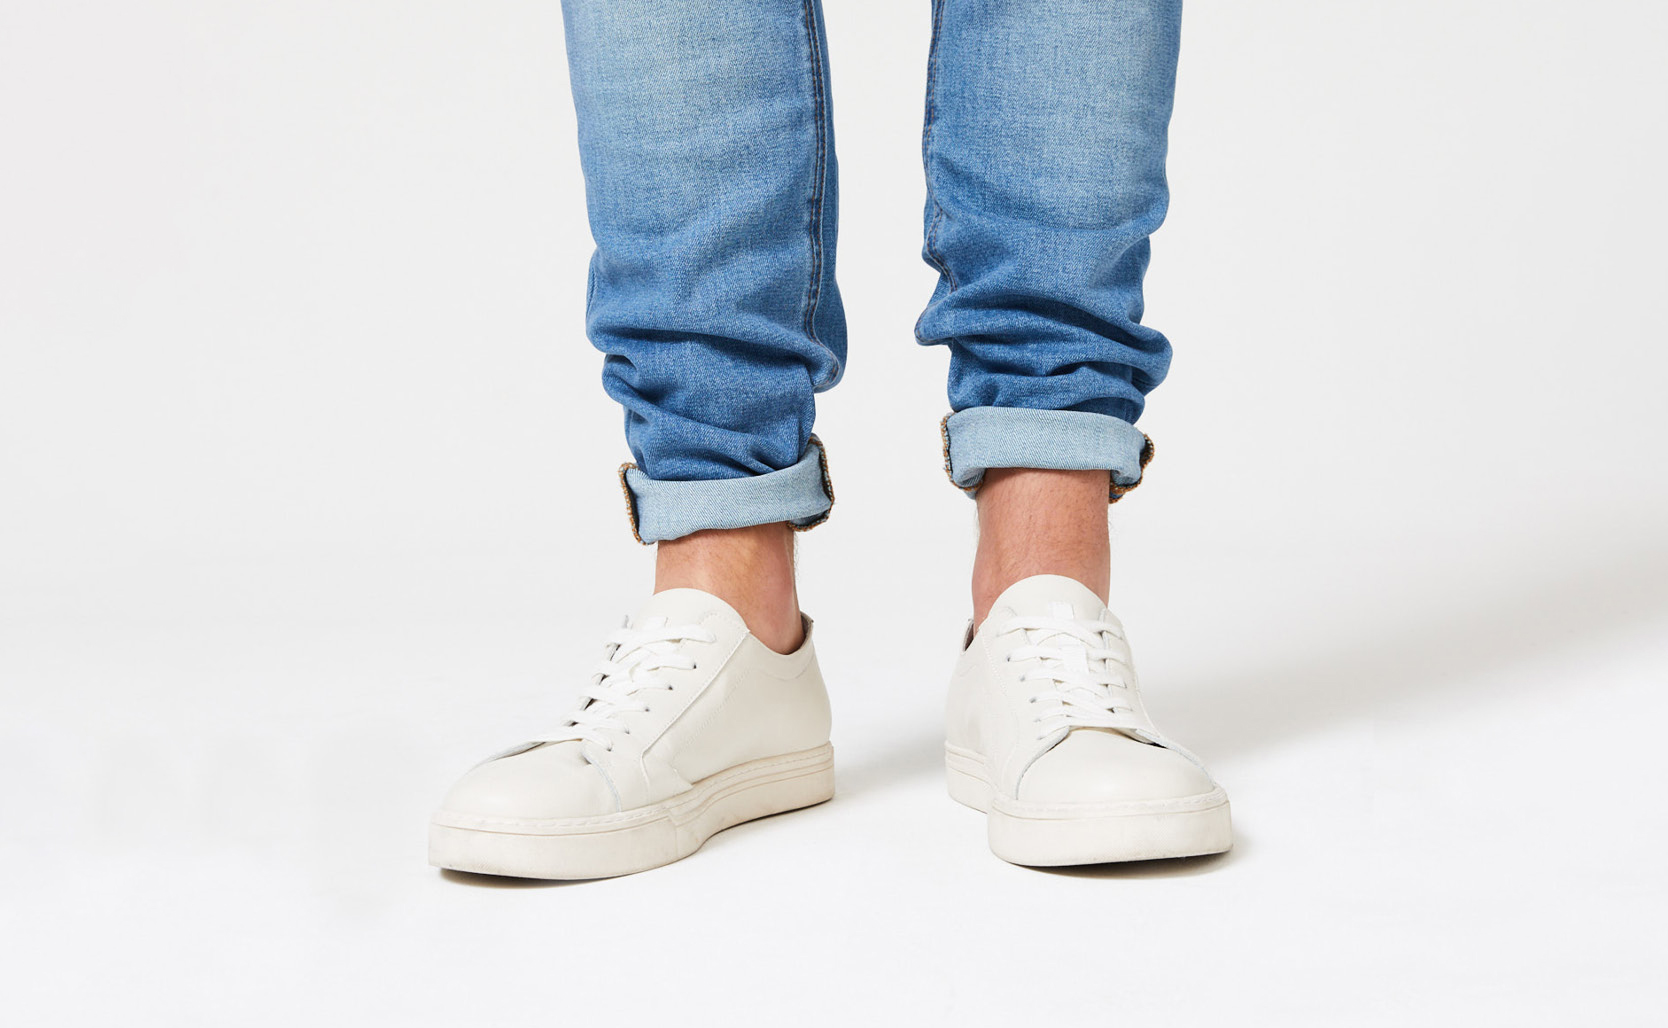 5 ways to cuff your Jeans like a G - Okayama Denim